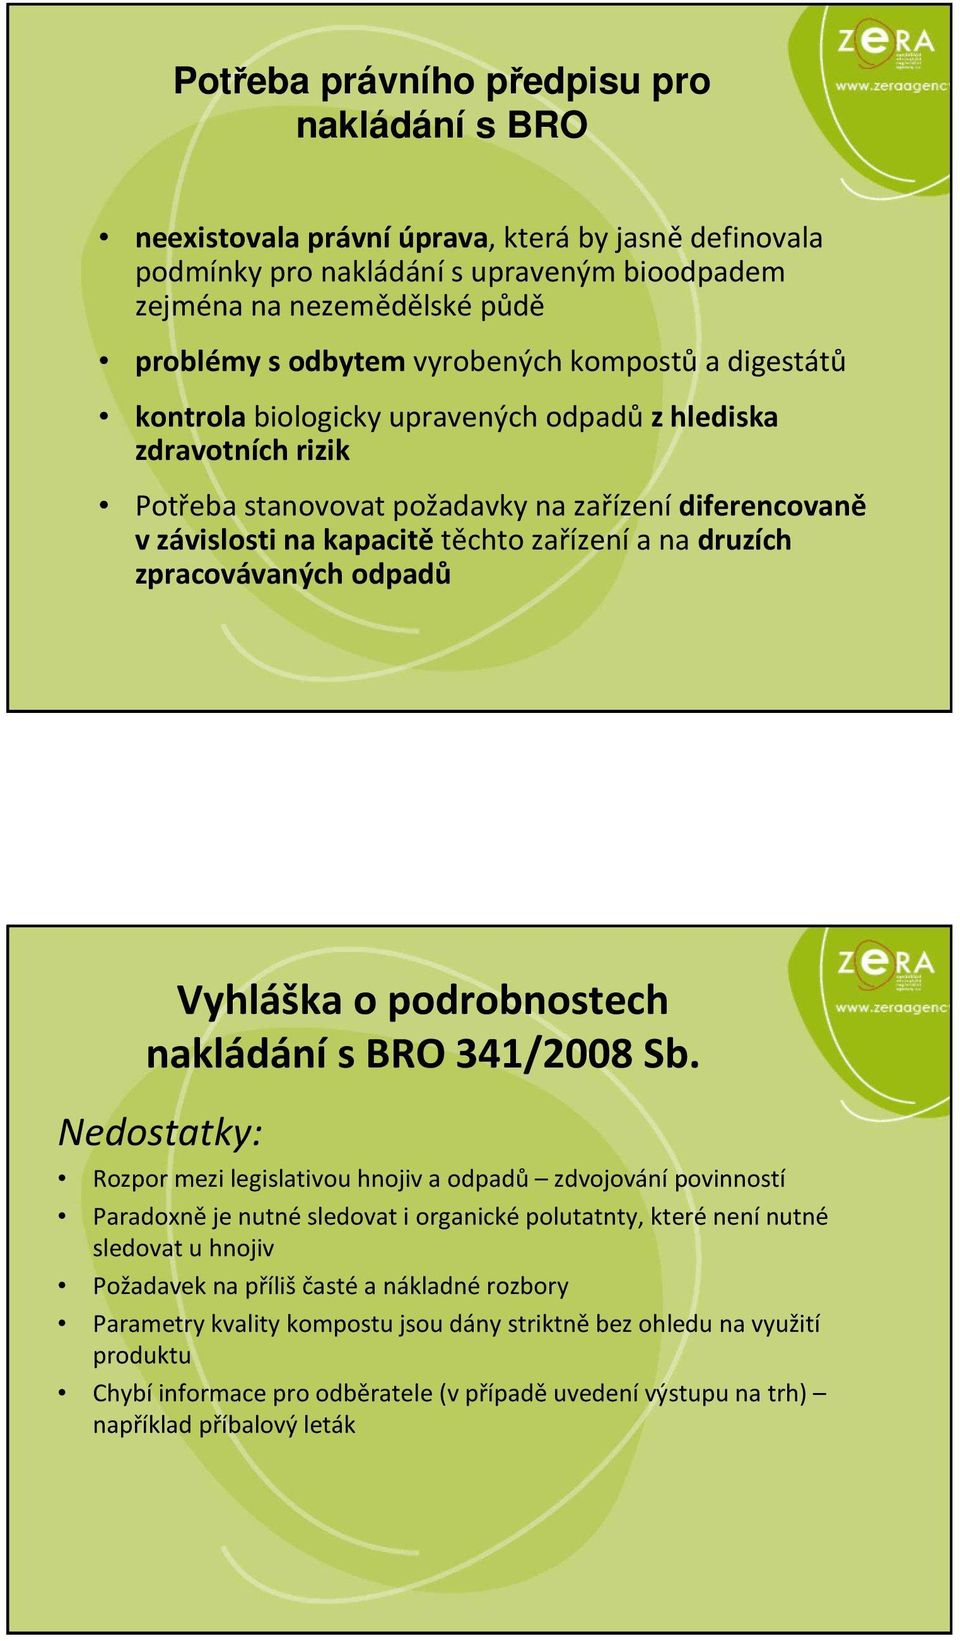 druzích zpracovávaných odpadů Vyhláška o podrobnostech nakládání s BRO 341/2008 Sb.